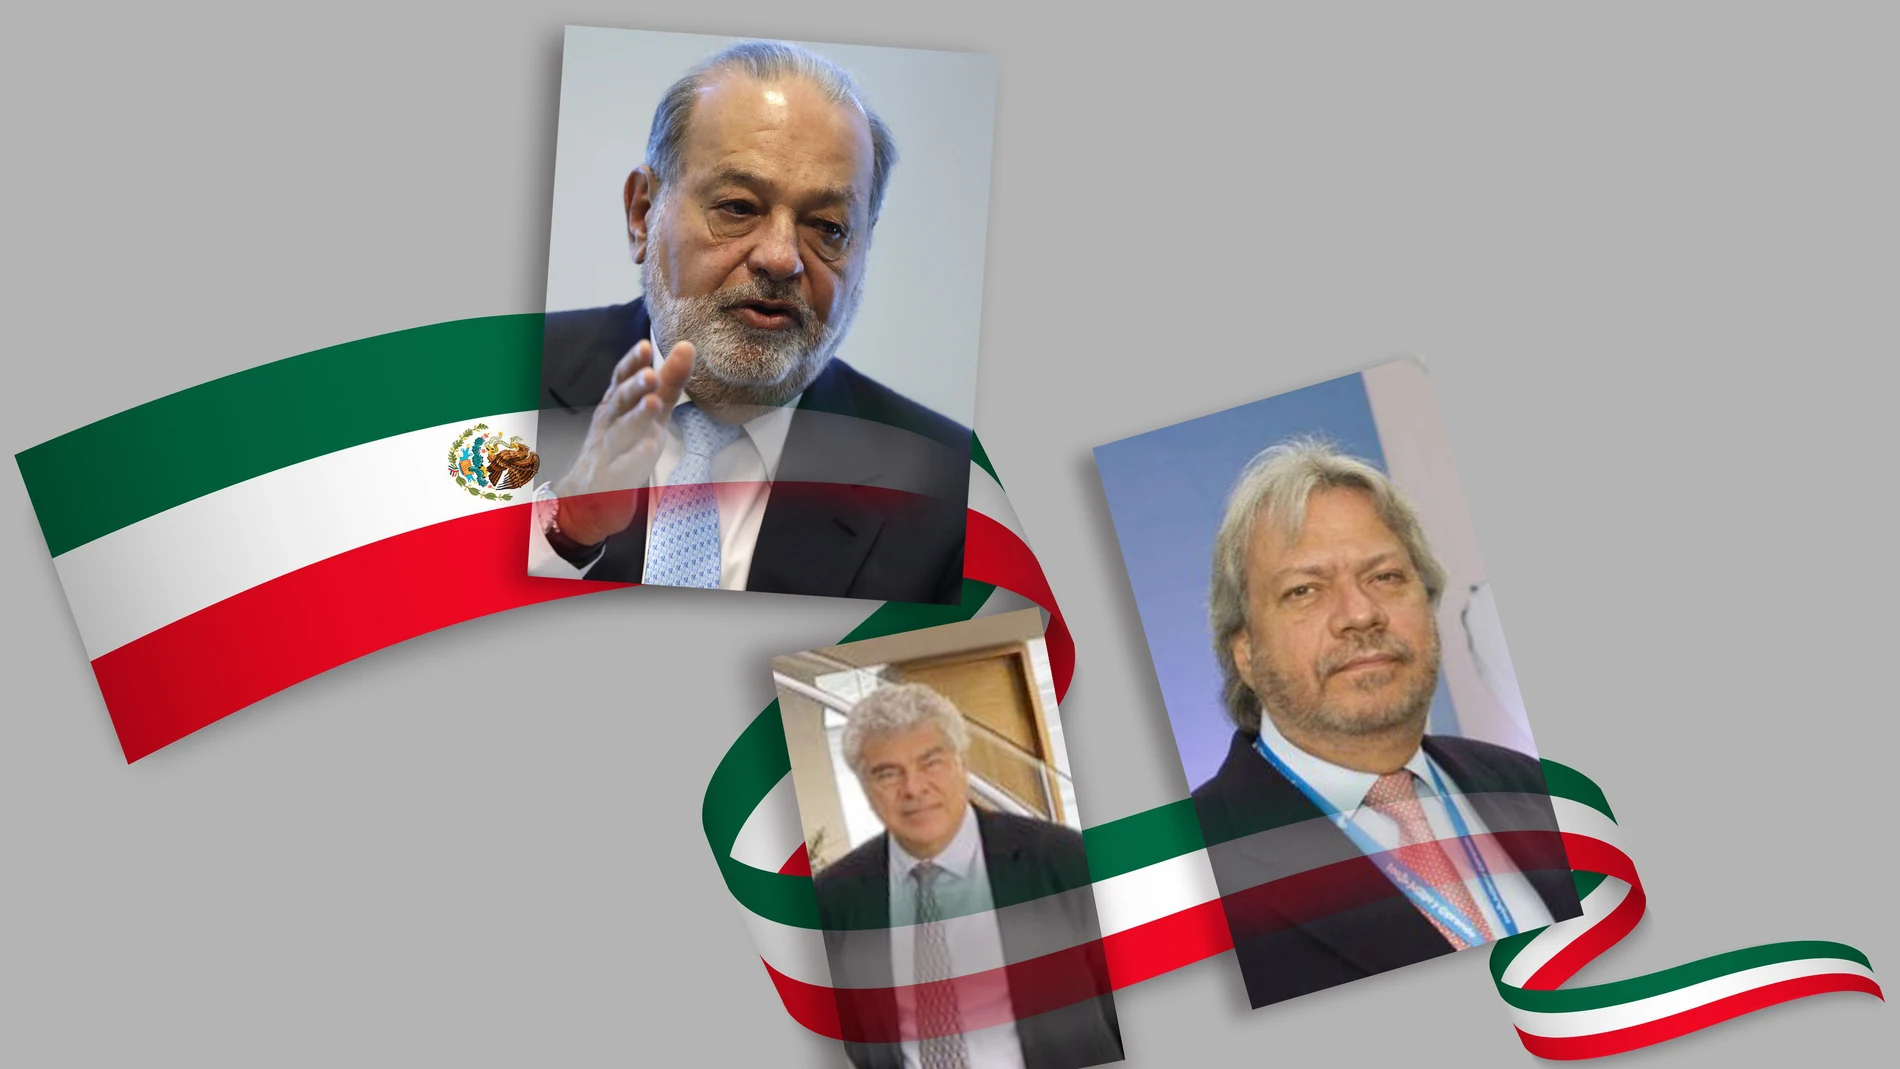 Las fortunas de Carlos Slim y los hermanos Amodio son de las más grandes de México